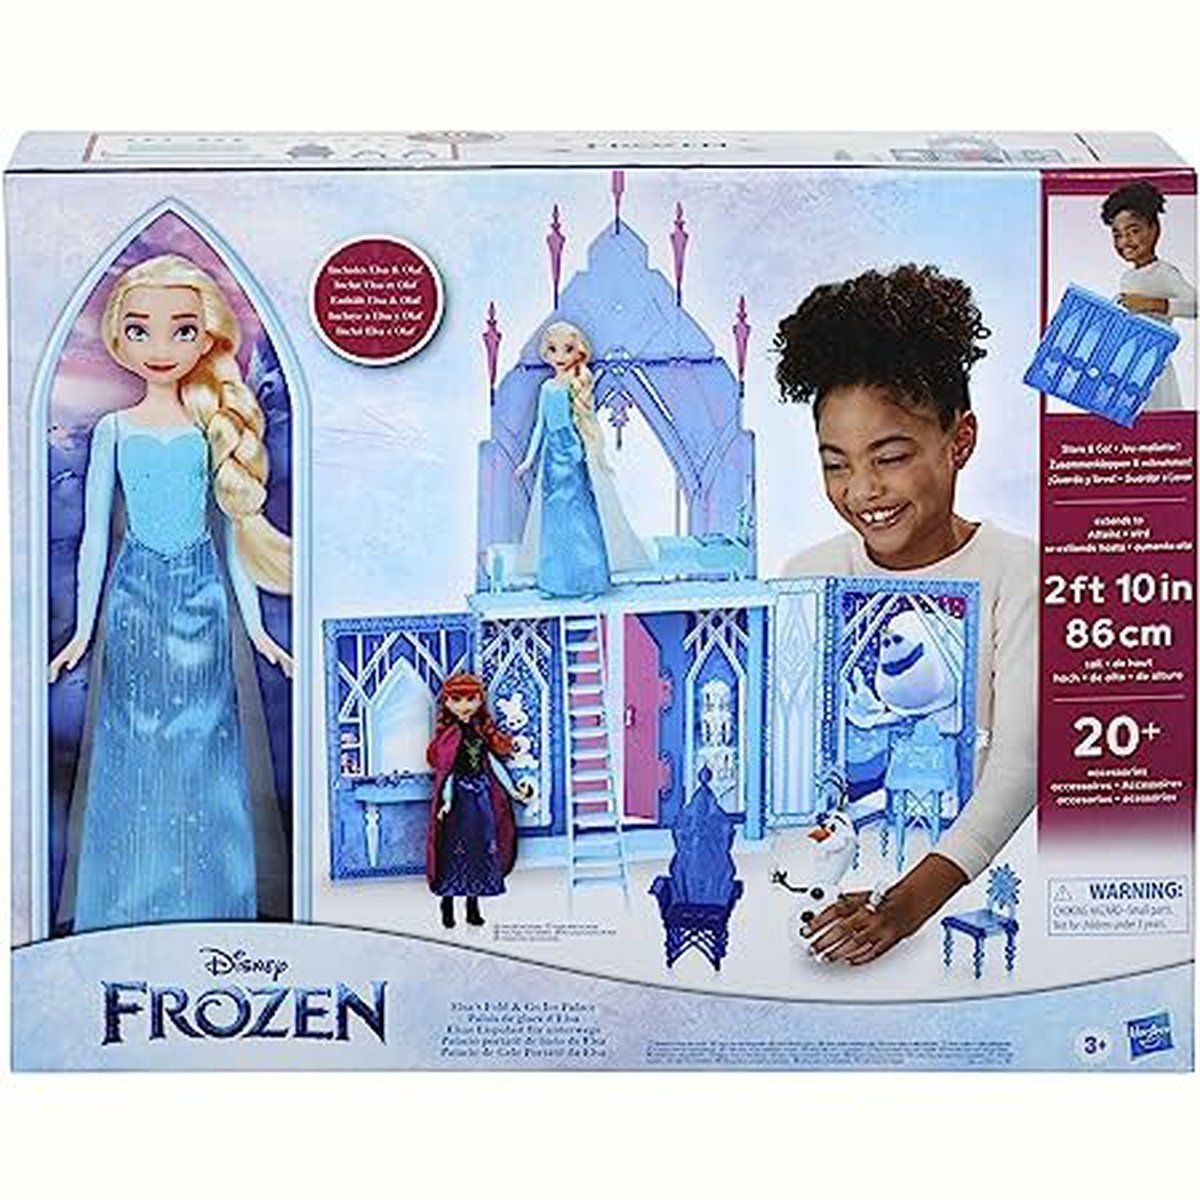 Disney La Reine des neiges 2, Palais de glace d'Elsa, poupées Elsa et Olaf, coffret château, pour enfants